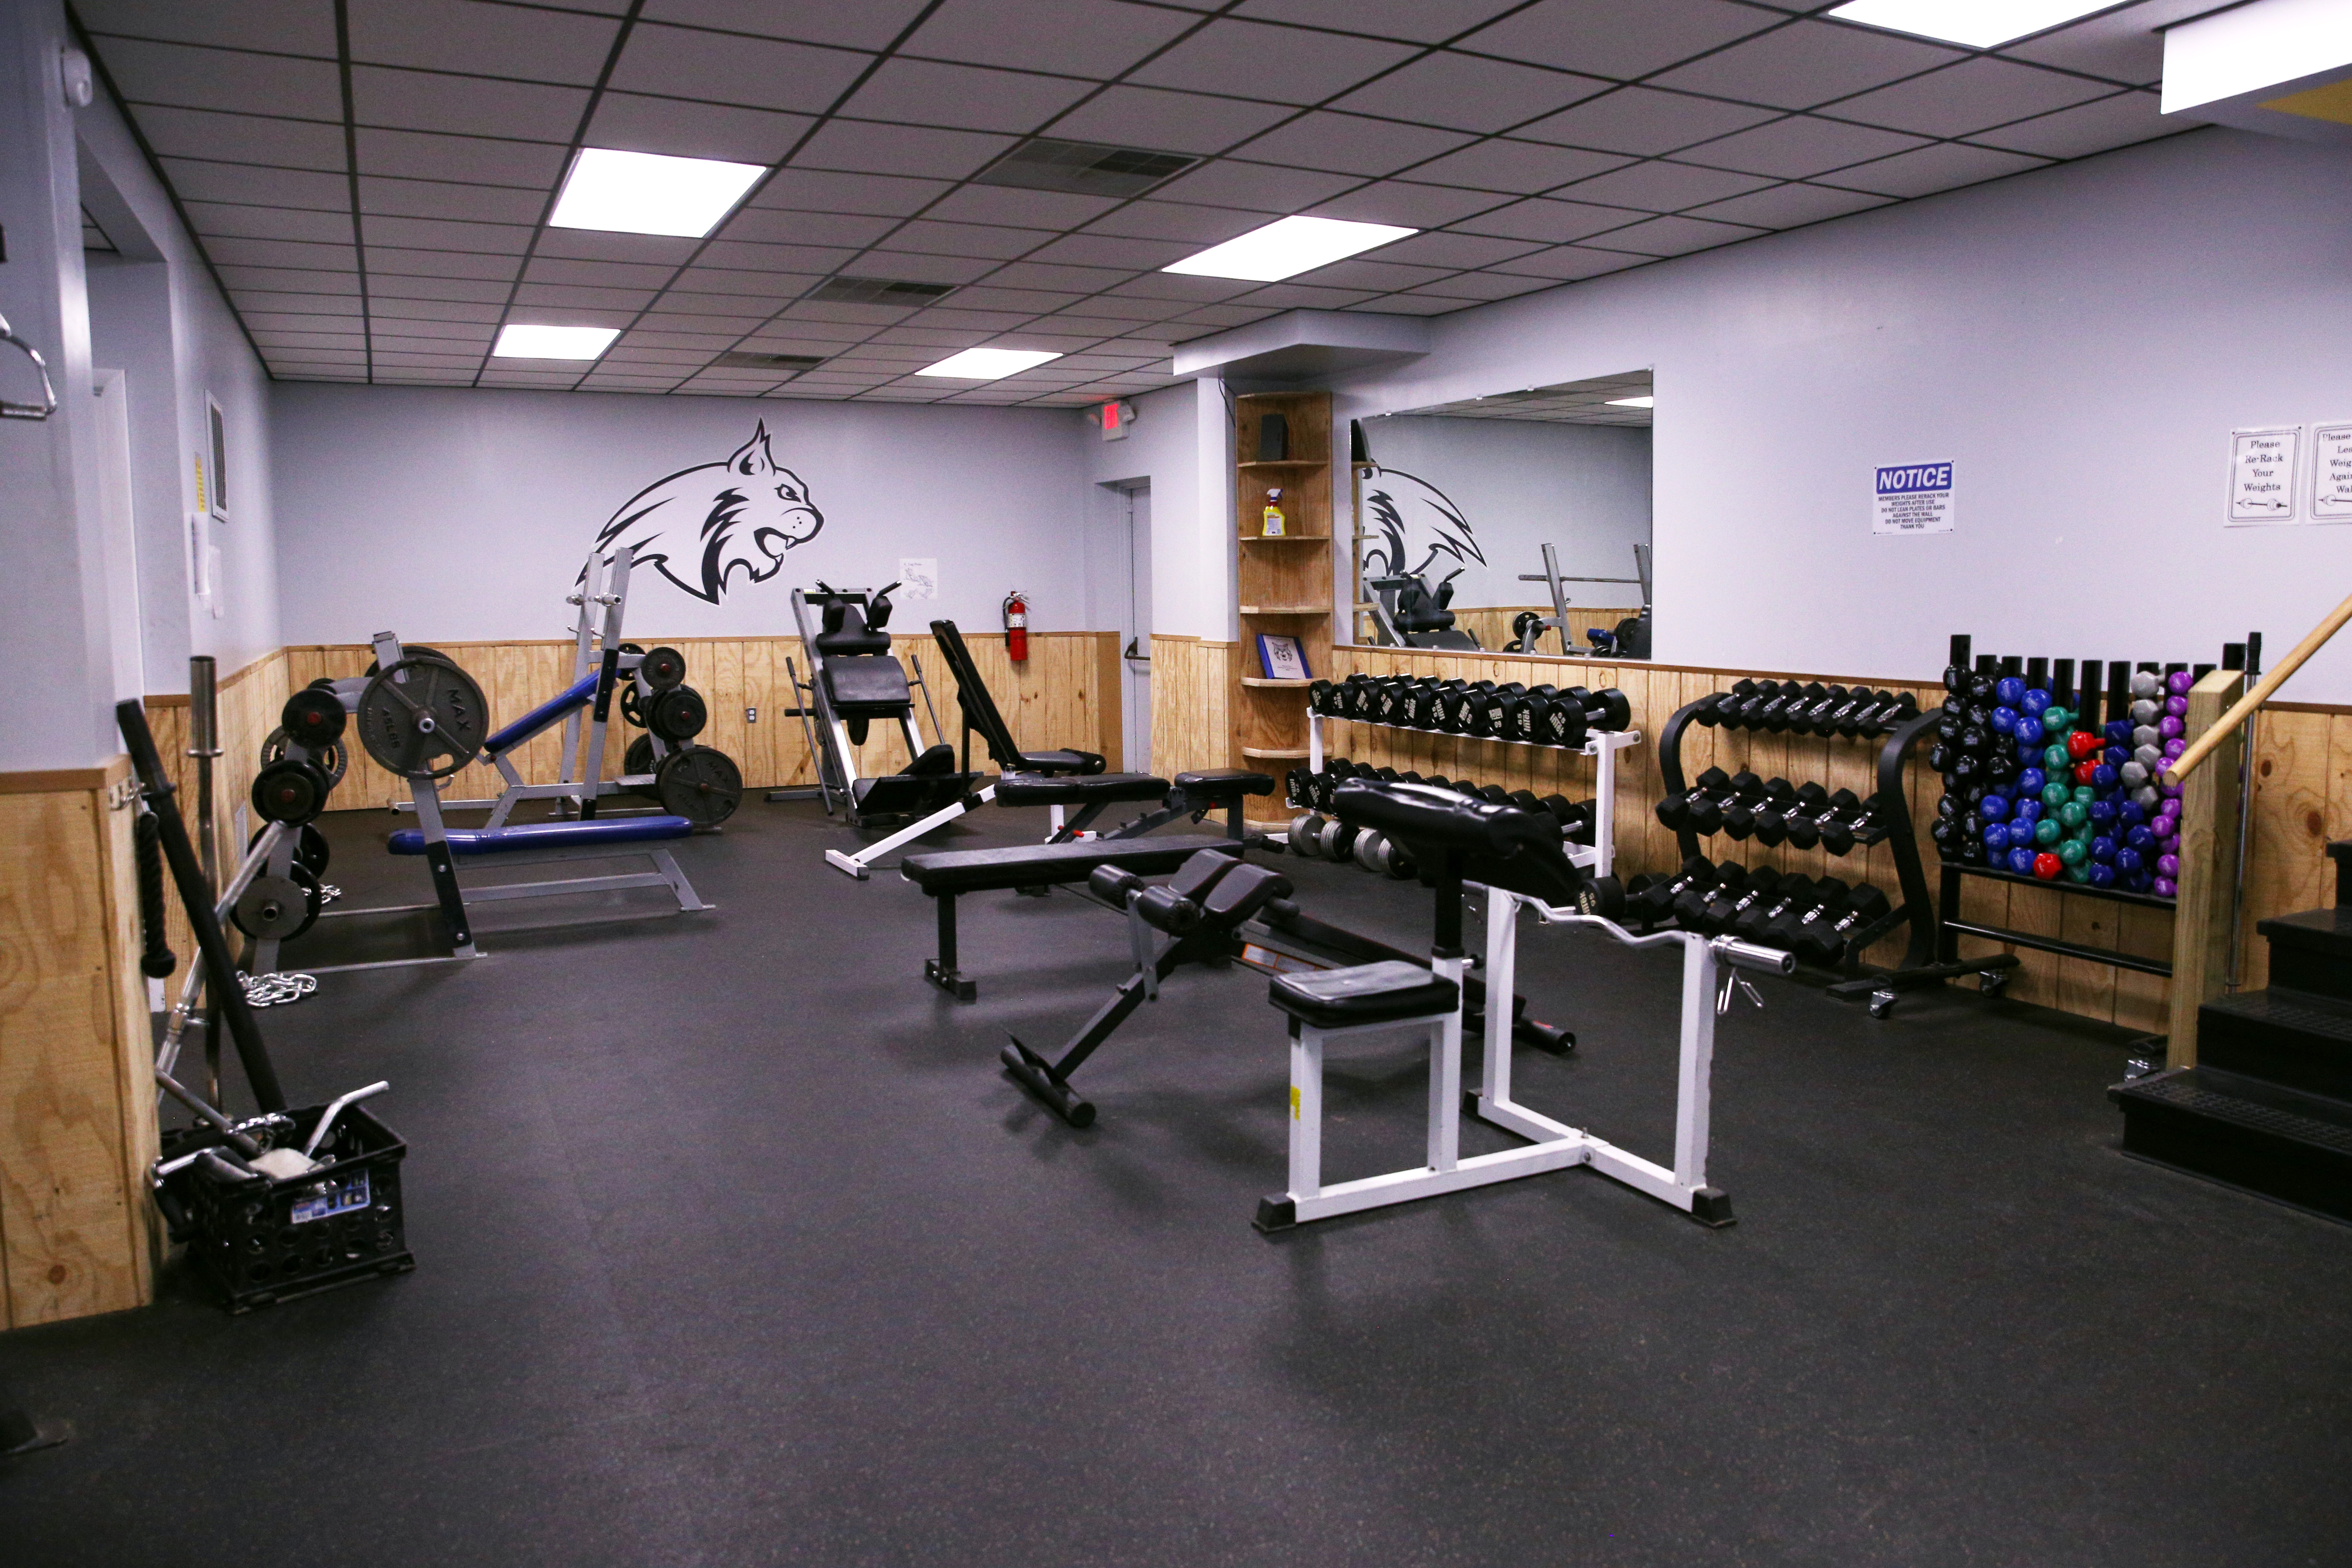 The Bobcat Den's fitness center